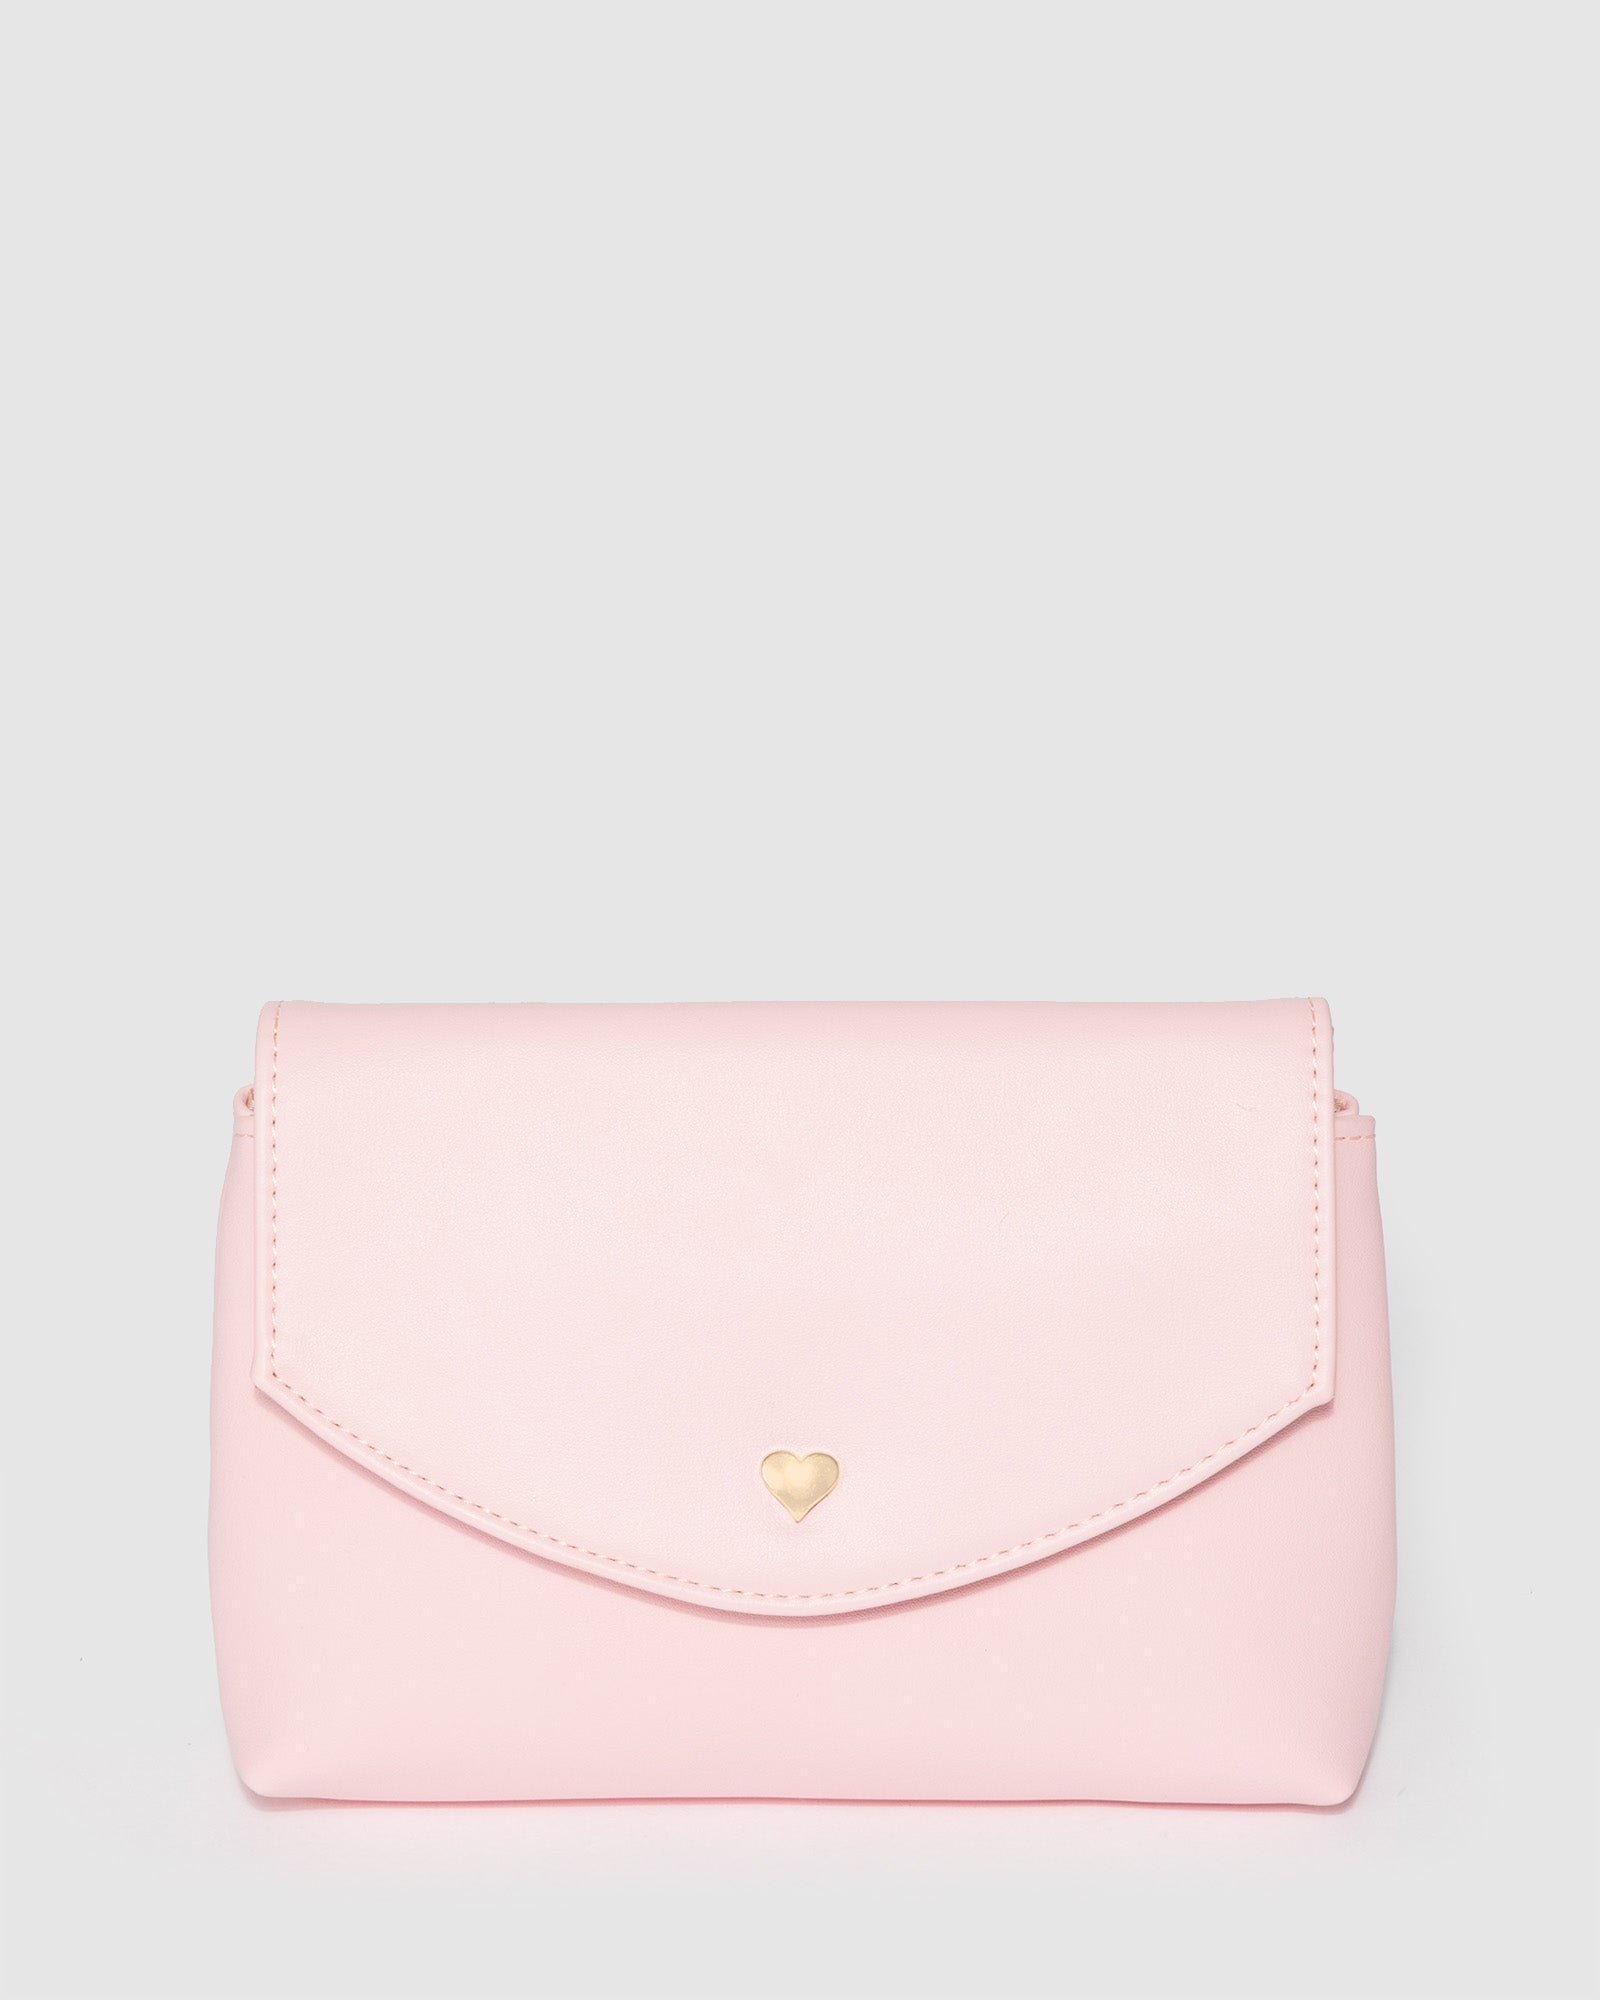 Buy Knited Light Pink Bag,handmade Bag,hand Women Bag,crochet Pink  Bag,designer Pink Bag,shoulder Pink Bag,luxury Bag Crochet,bag Purse,handbag  Online in India - Etsy